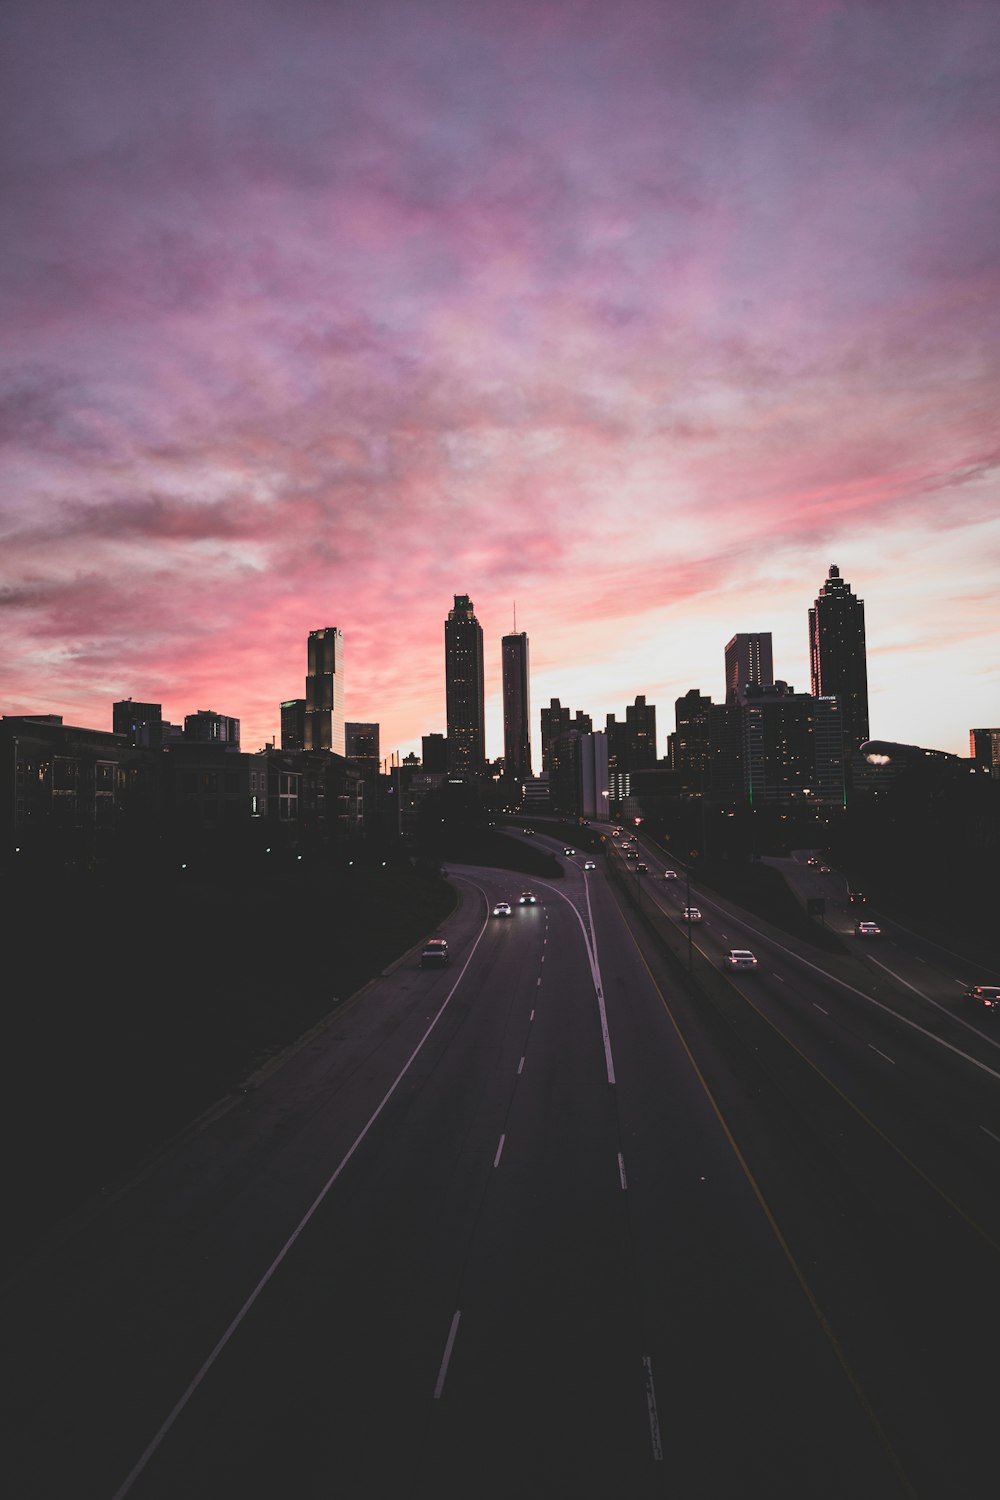 해질녘 회색과 분홍색의 흐린 하늘 아래 고속도로를 달리는 자동차